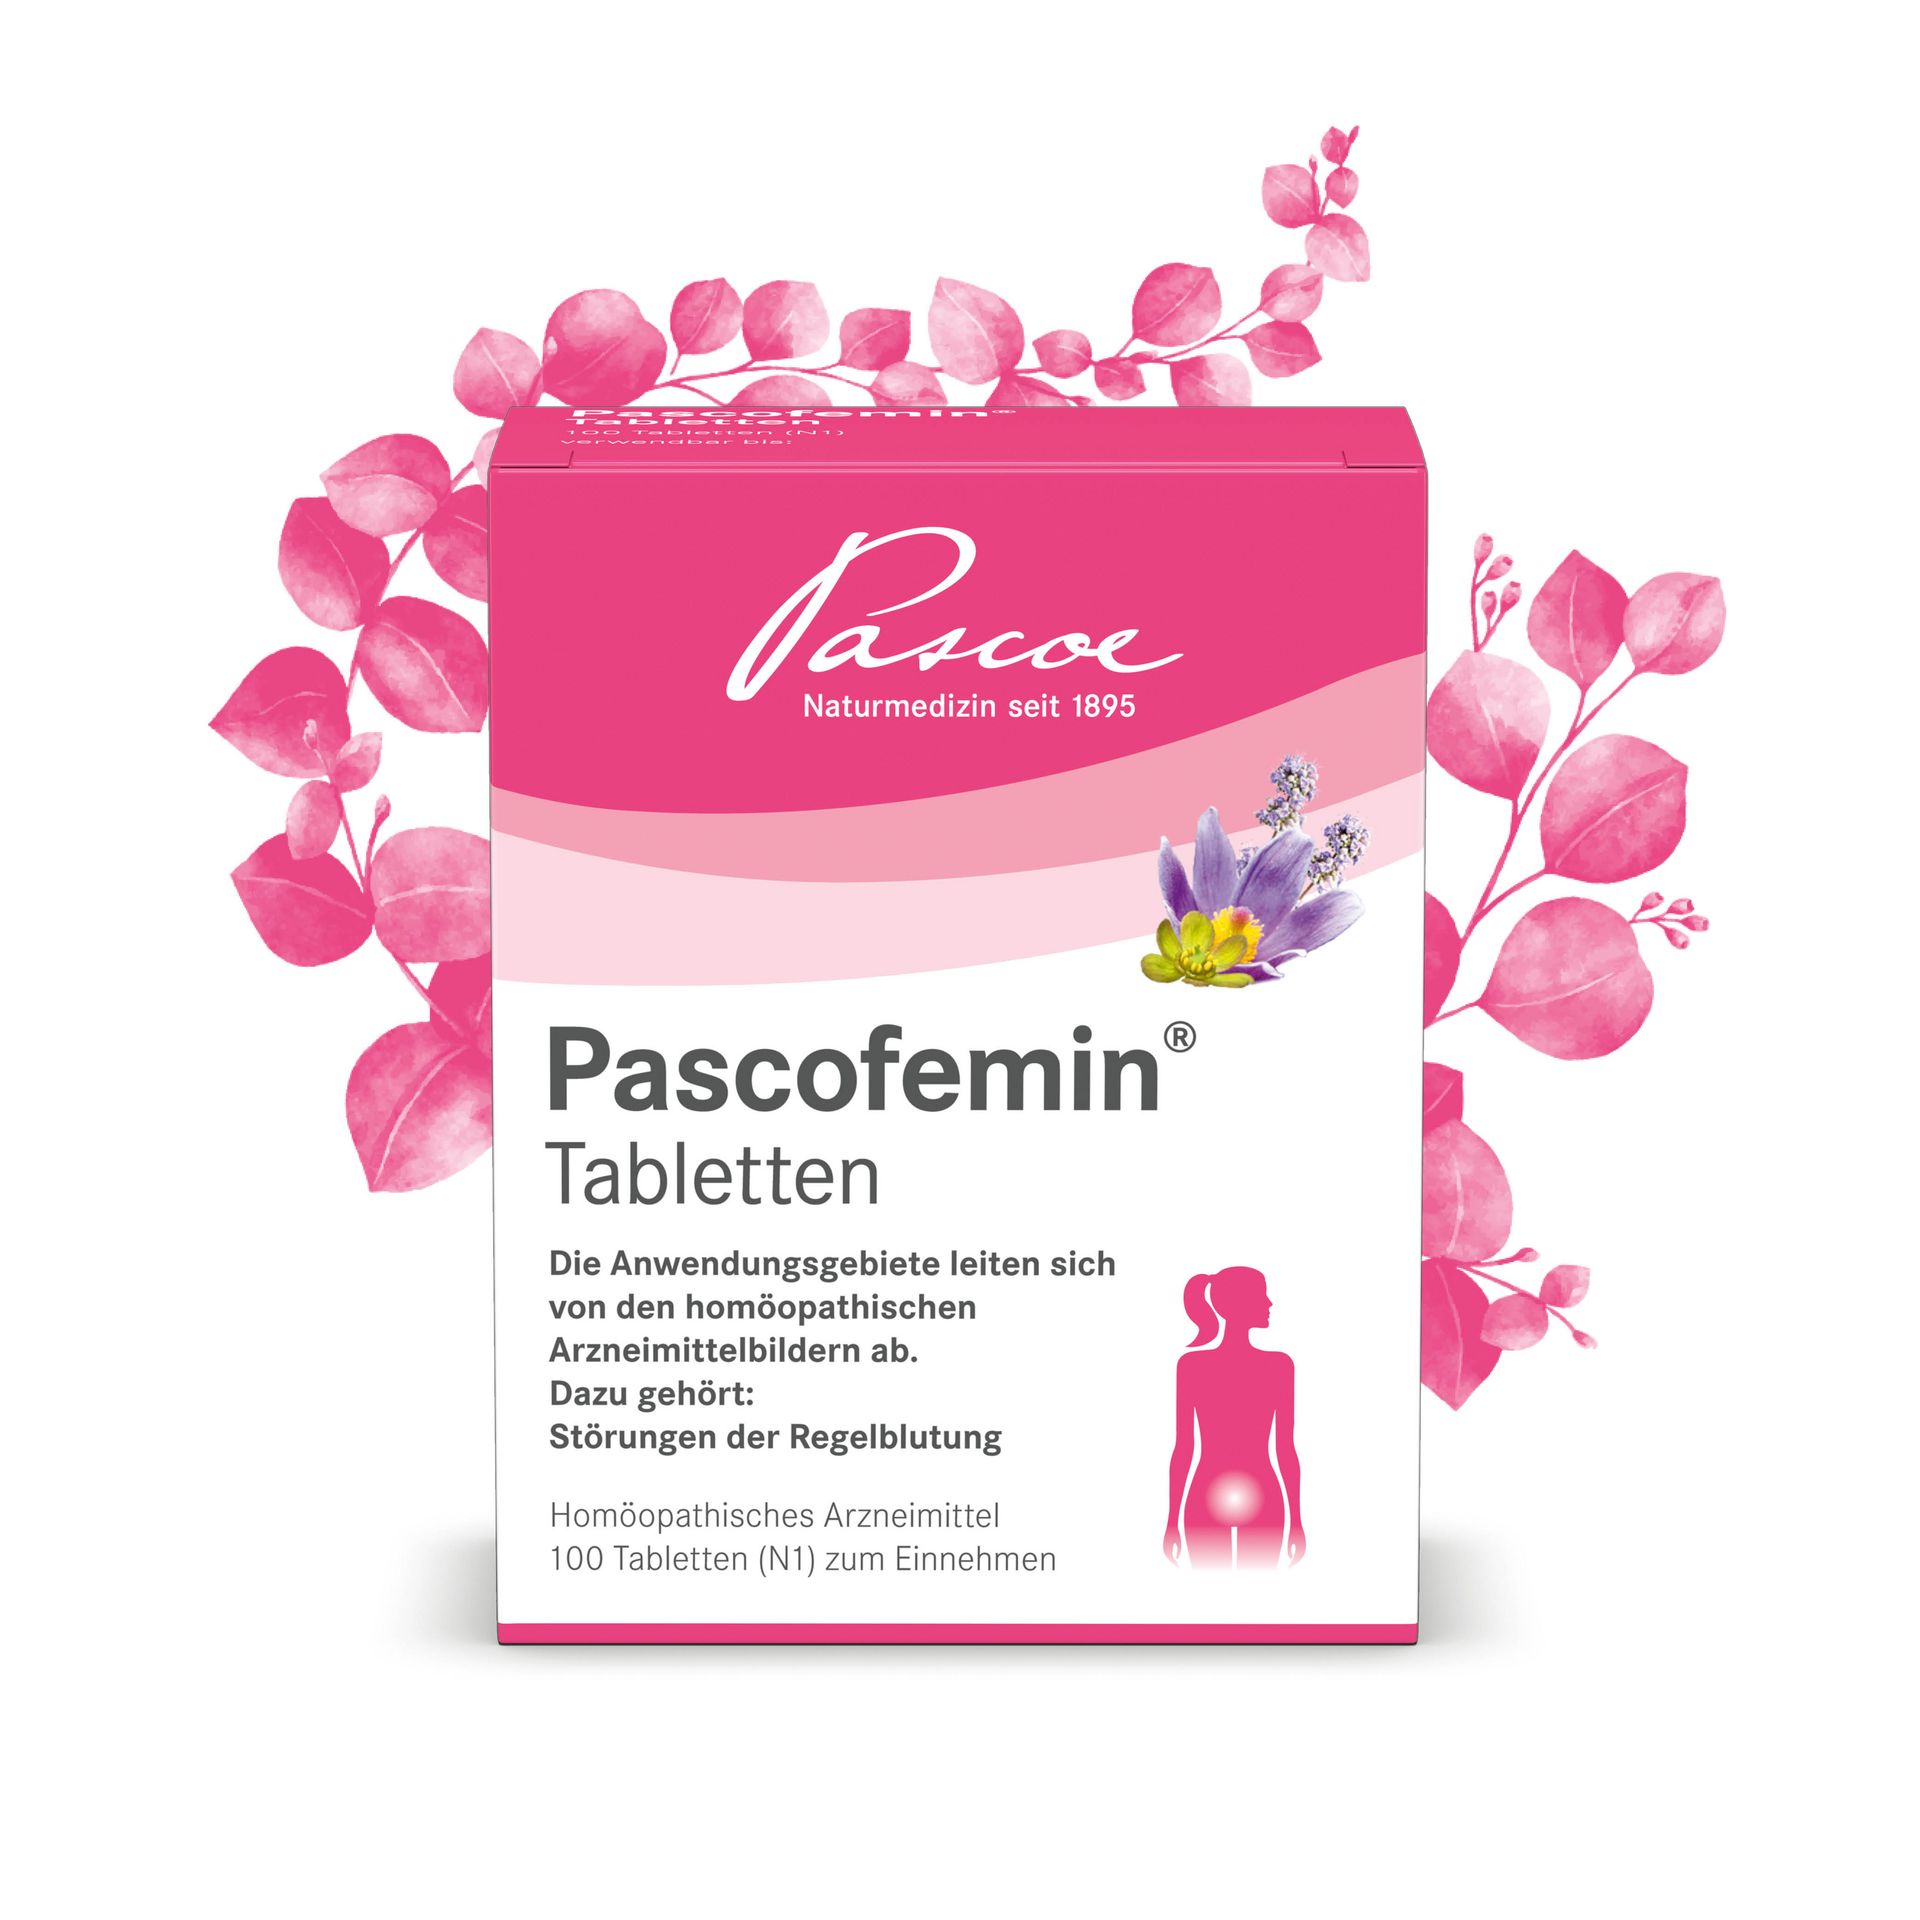 Pascofemin Tabletten Packshot